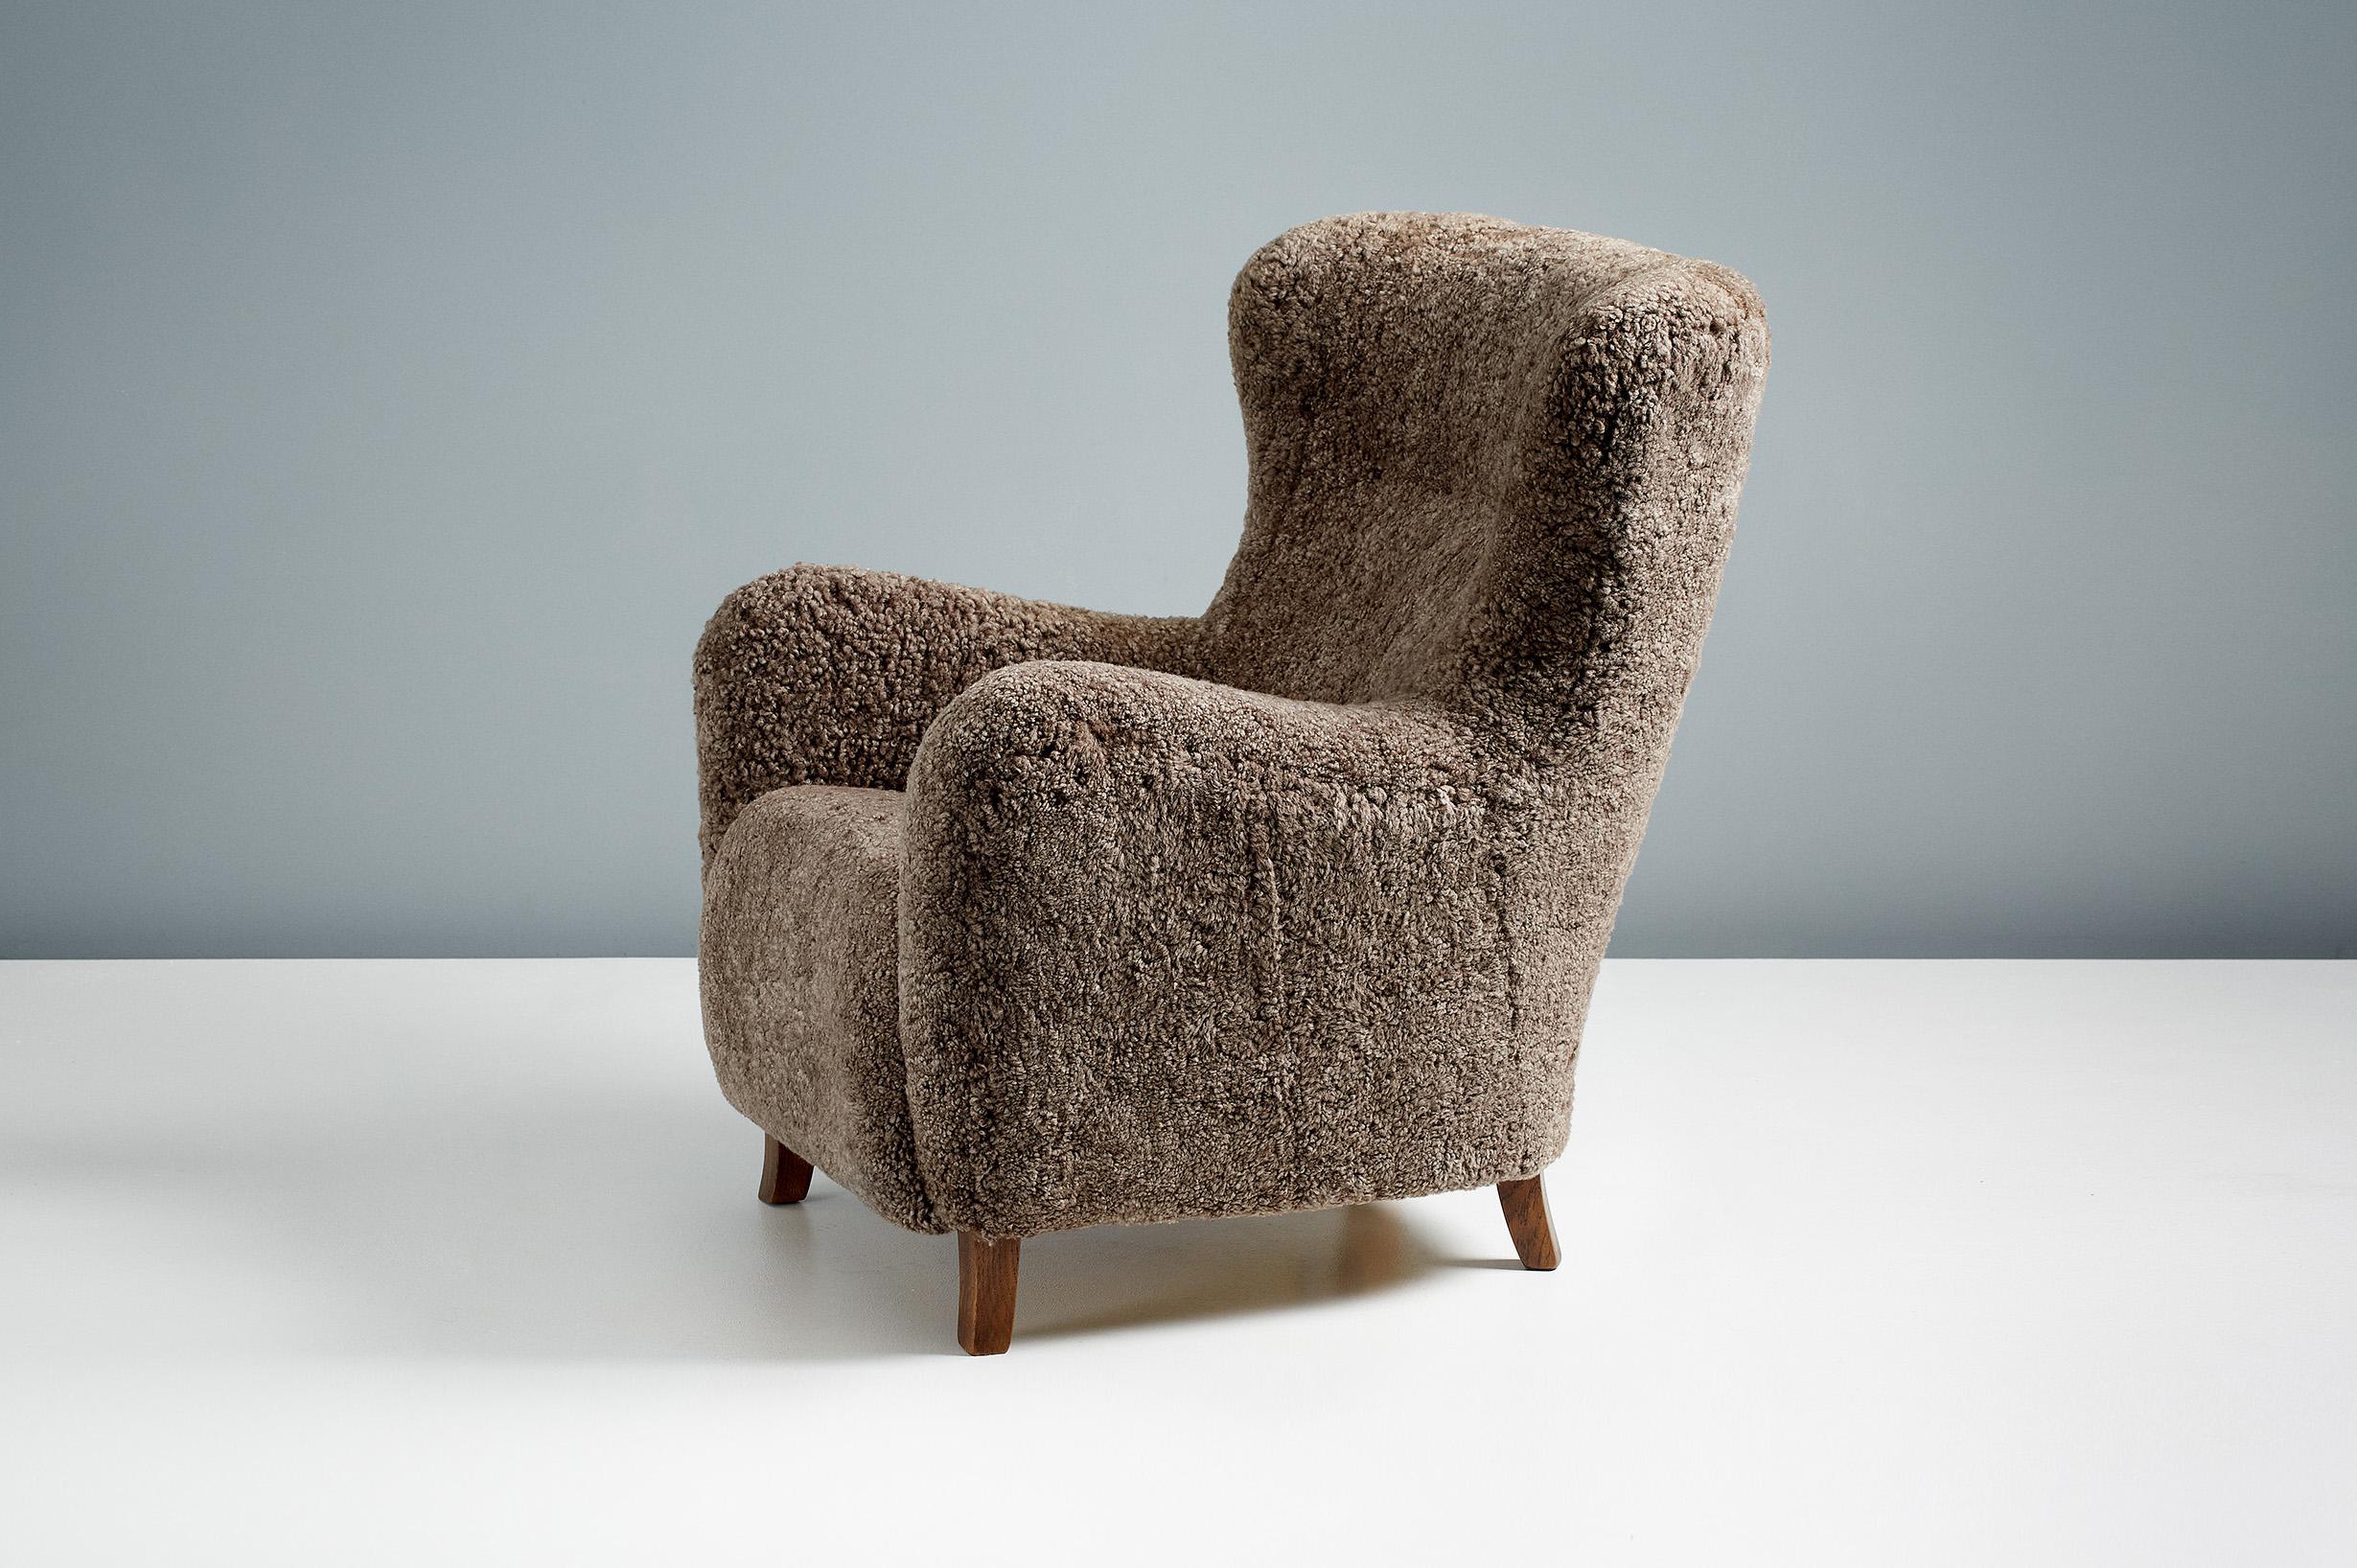 Dagmar - Sampo Wing Chair & Ottoman

Un fauteuil à oreilles et un ottoman sur mesure développés et produits dans nos ateliers à Londres en utilisant des matériaux de la plus haute qualité. Le cadre est construit en bois de hêtre massif et l'assise